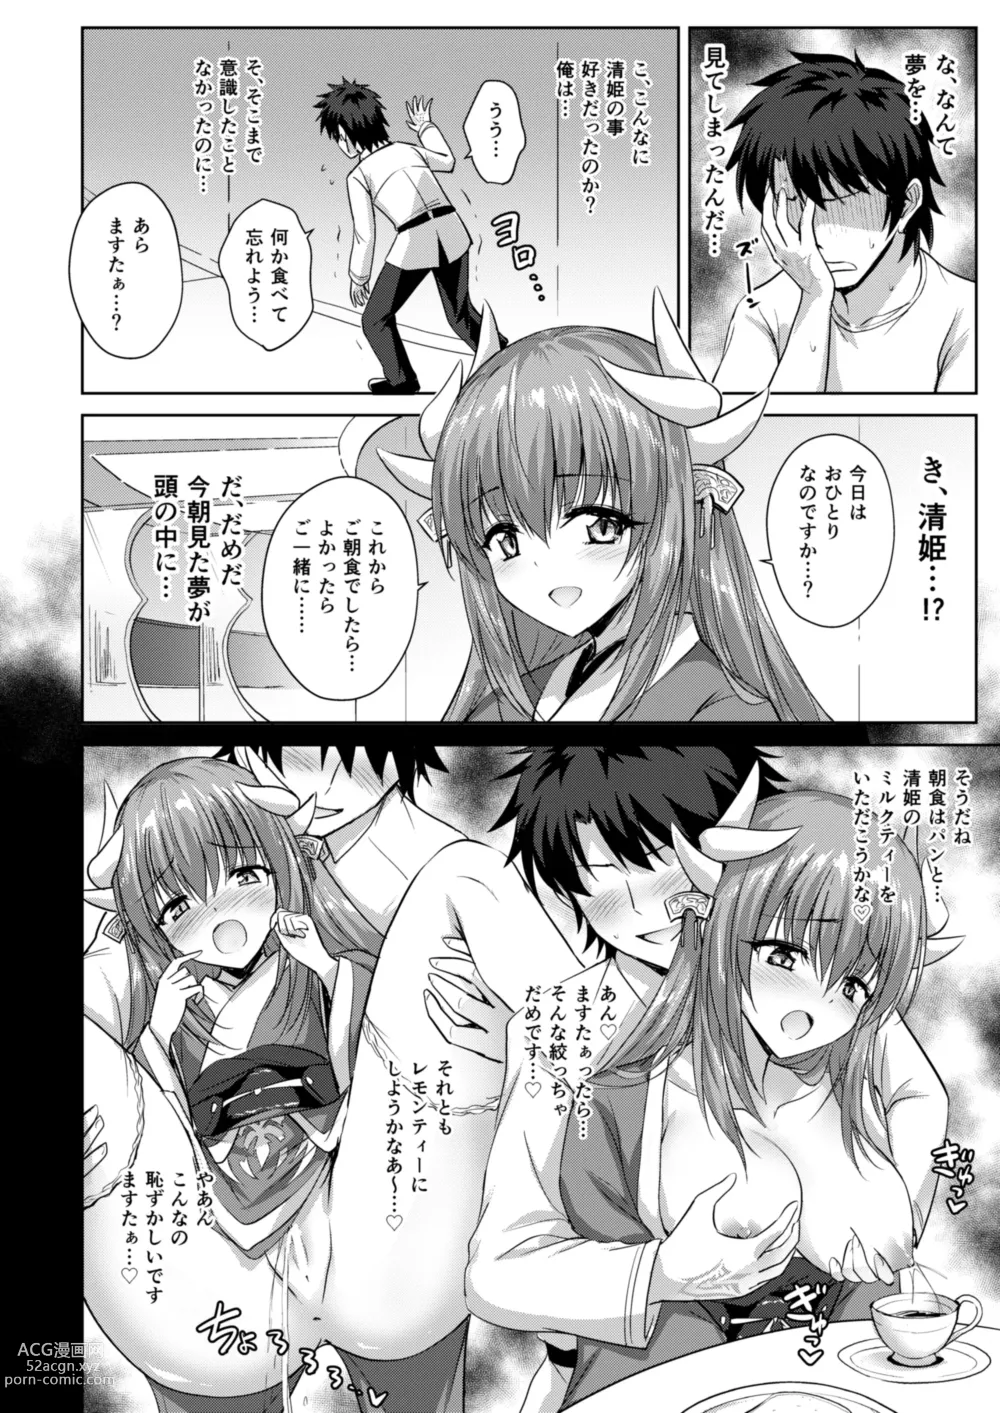 Page 13 of doujinshi Futon no Naka no Kiyohime-chan